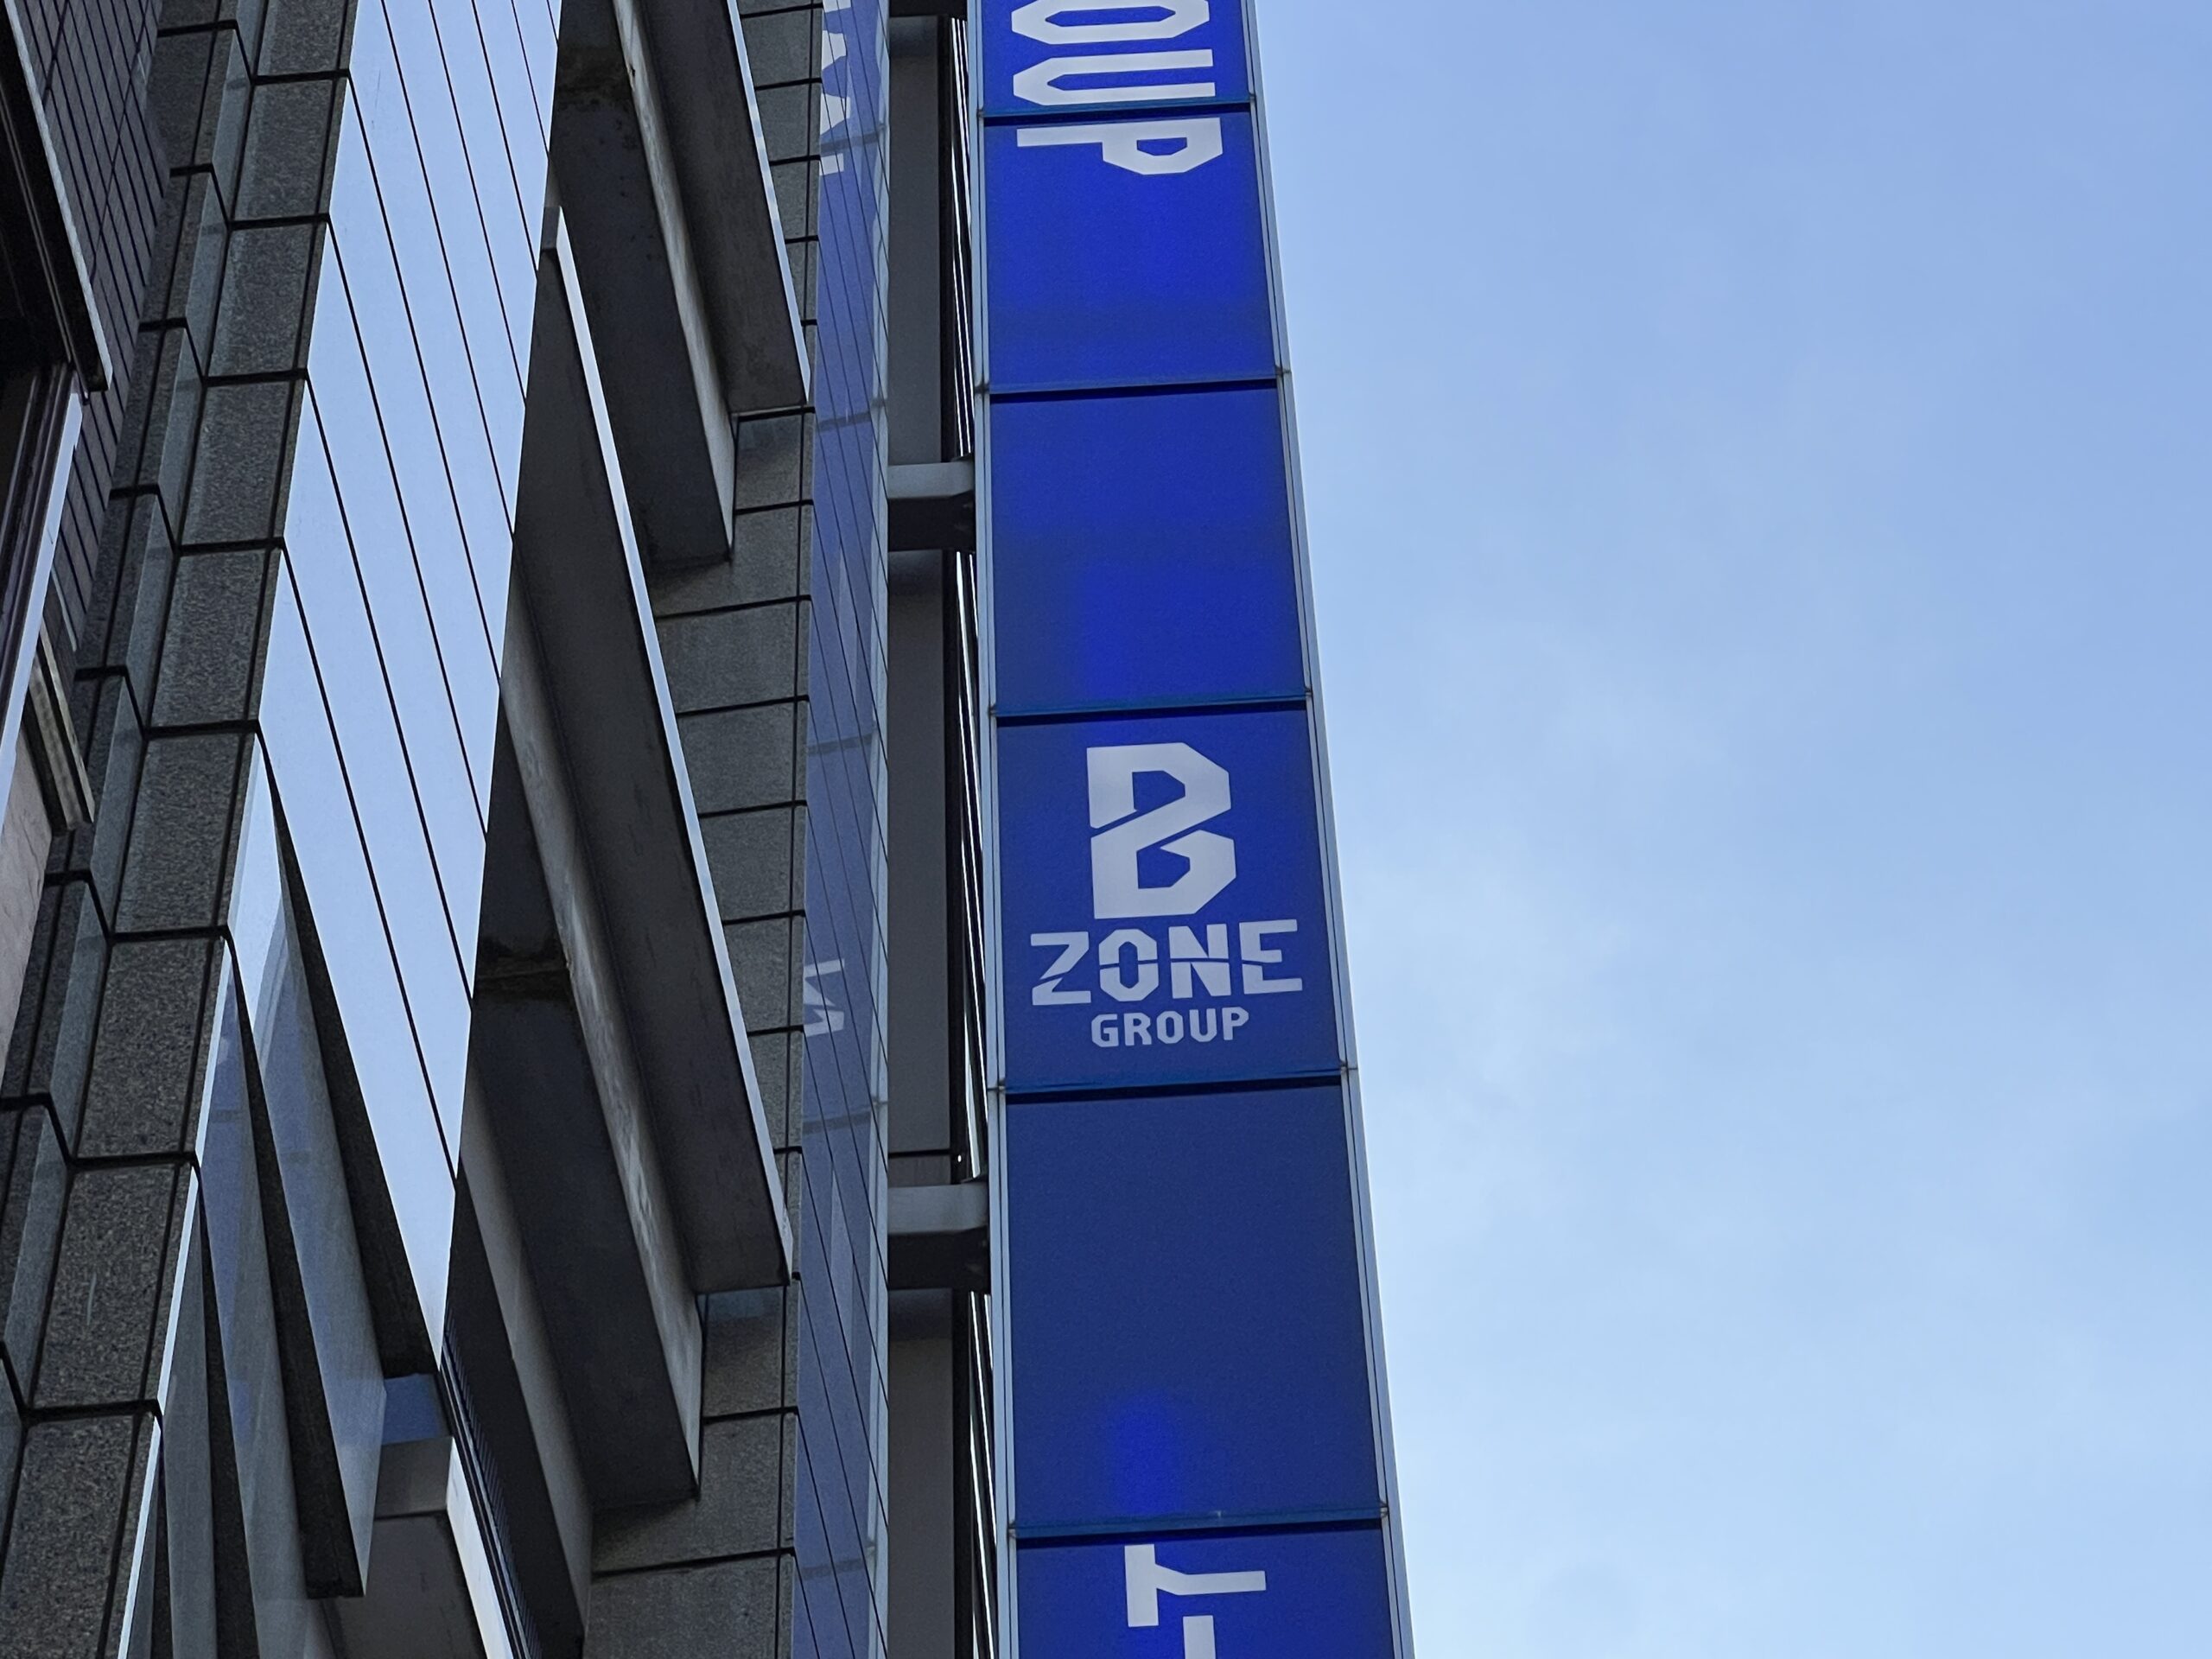 「B ZONE GROUP」のロゴ看板